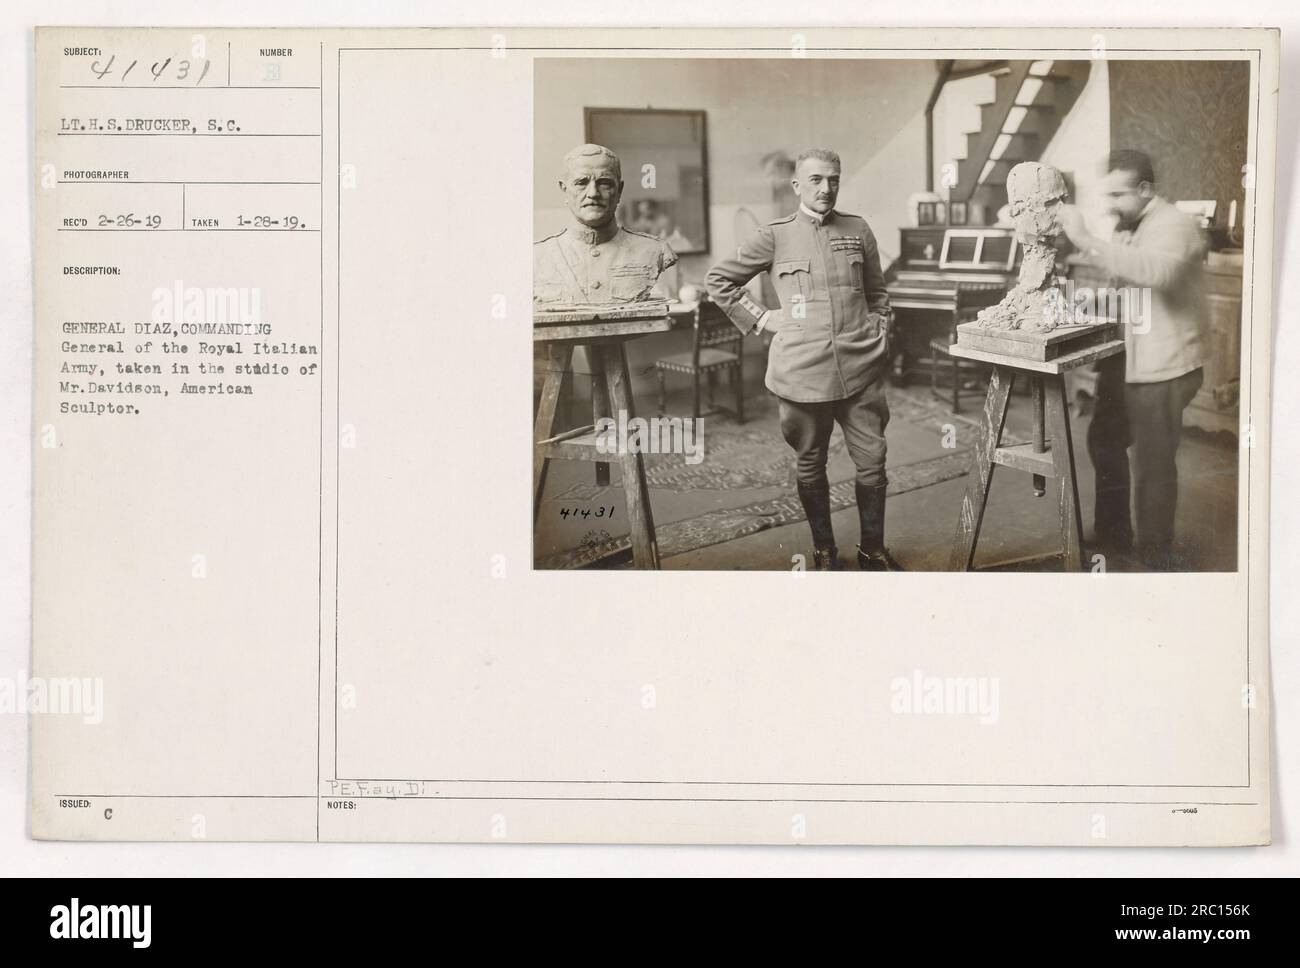 Leutnant H.S. Drucker, S.C., Fotograf, nimmt ein Porträt von General Diaz, dem kommandierenden General der Royal Italian Army, im Studio von Mr. Davidson, einem amerikanischen Bildhauer, auf. Das Foto wurde am 28. Januar 1919 aufgenommen und ist in der Sammlung häufig als 111-SC-41431 gekennzeichnet. Stockfoto